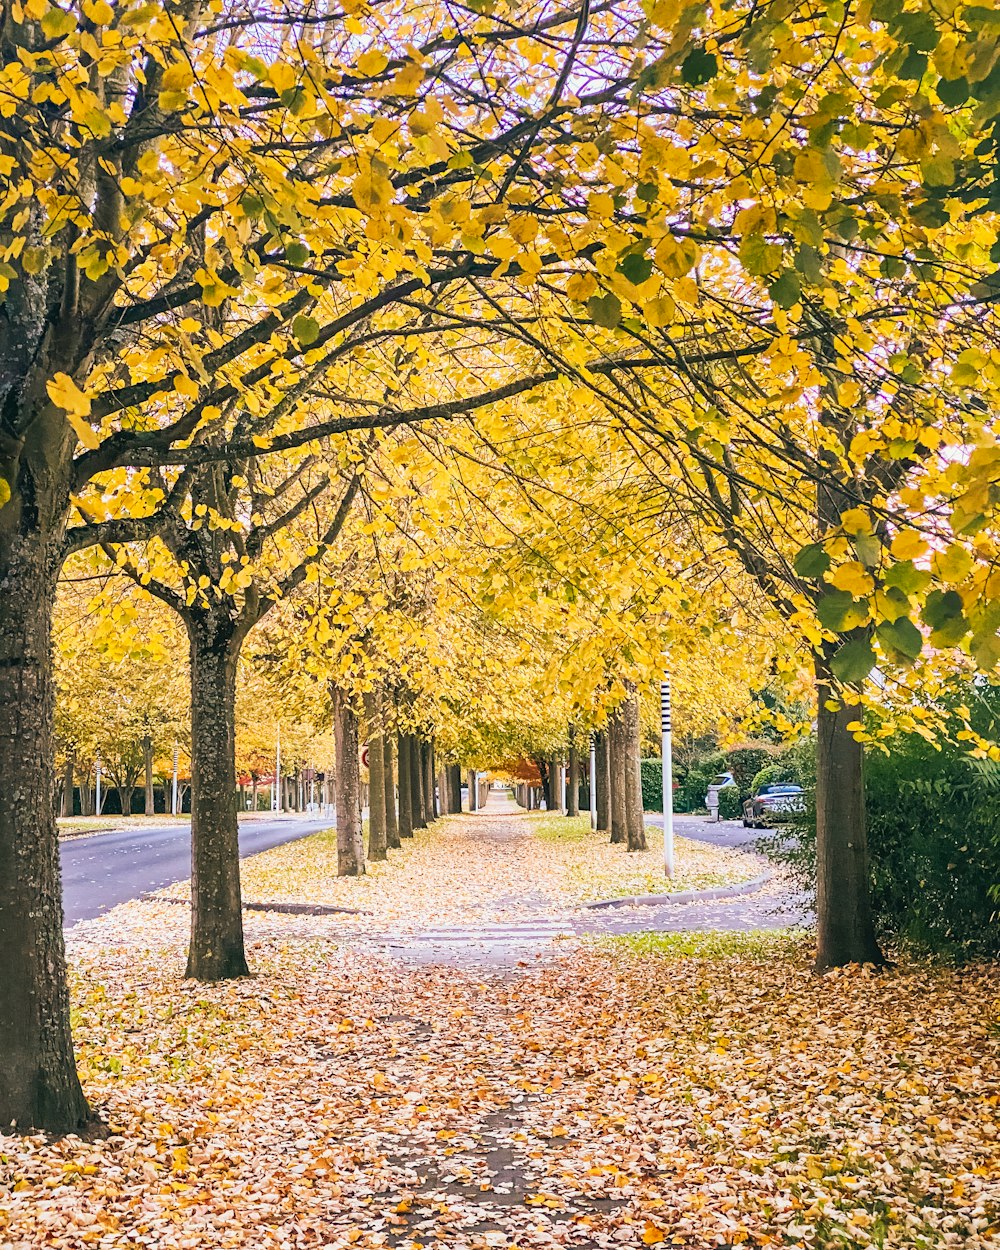 une rue bordée d’arbres avec des feuilles jaunes au sol